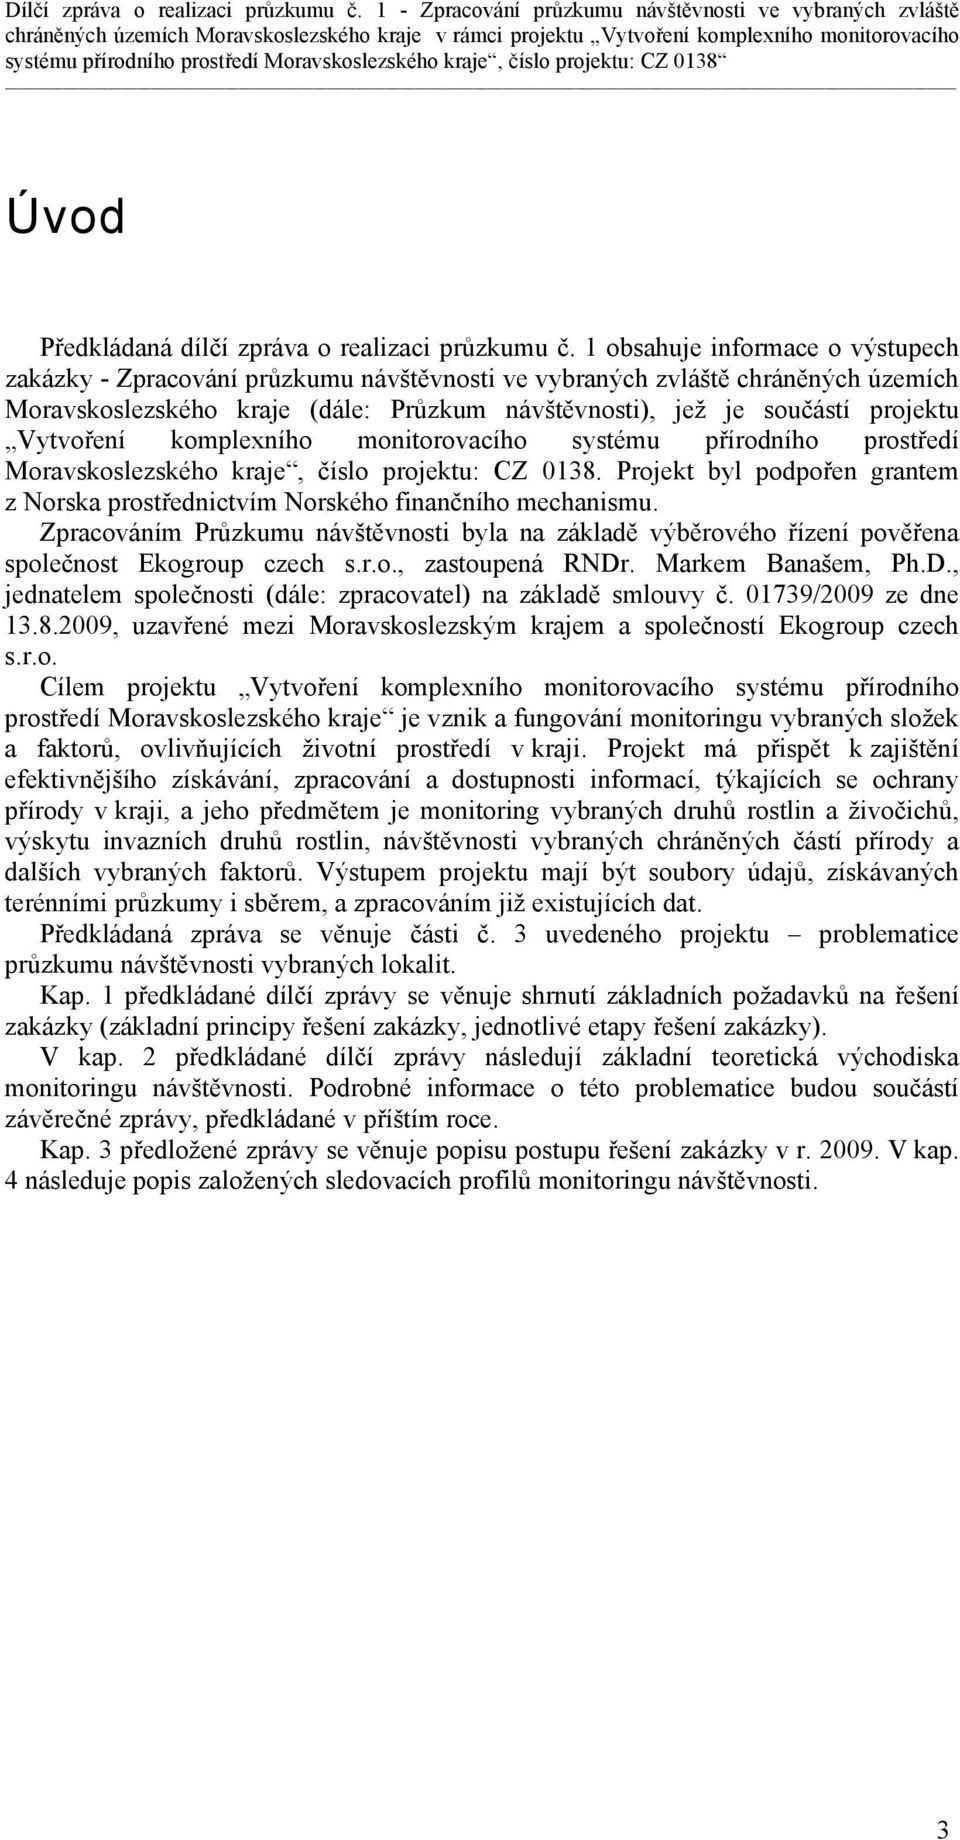 Vytvoření komplexního monitorovacího systému přírodního prostředí Moravskoslezského kraje, číslo projektu: CZ 0138.